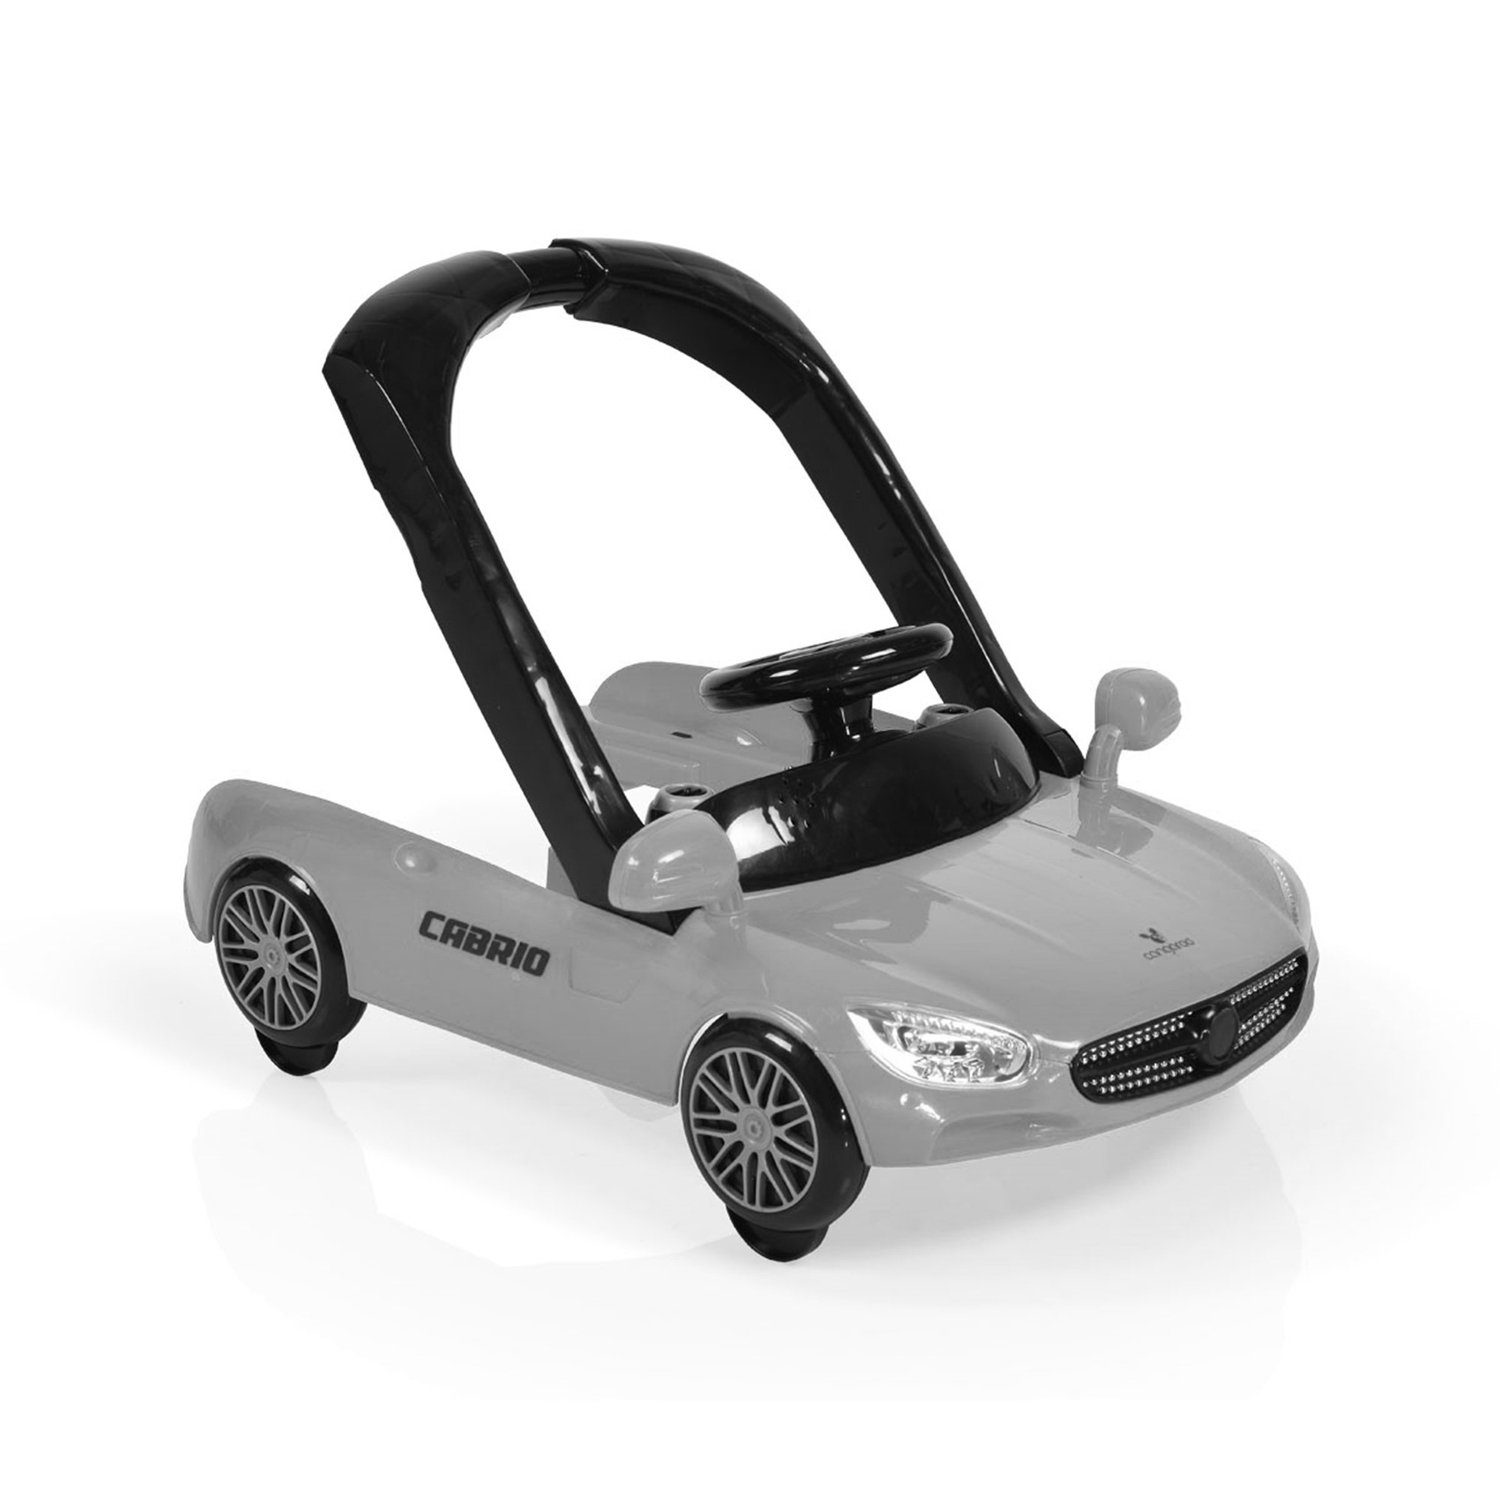 Armaturenbrett Auto-Design Cabrio Licht mit in1, 2 Cangaroo grau/schwarz höhenverstellbar Lauflernhilfe Lauflernhilfe